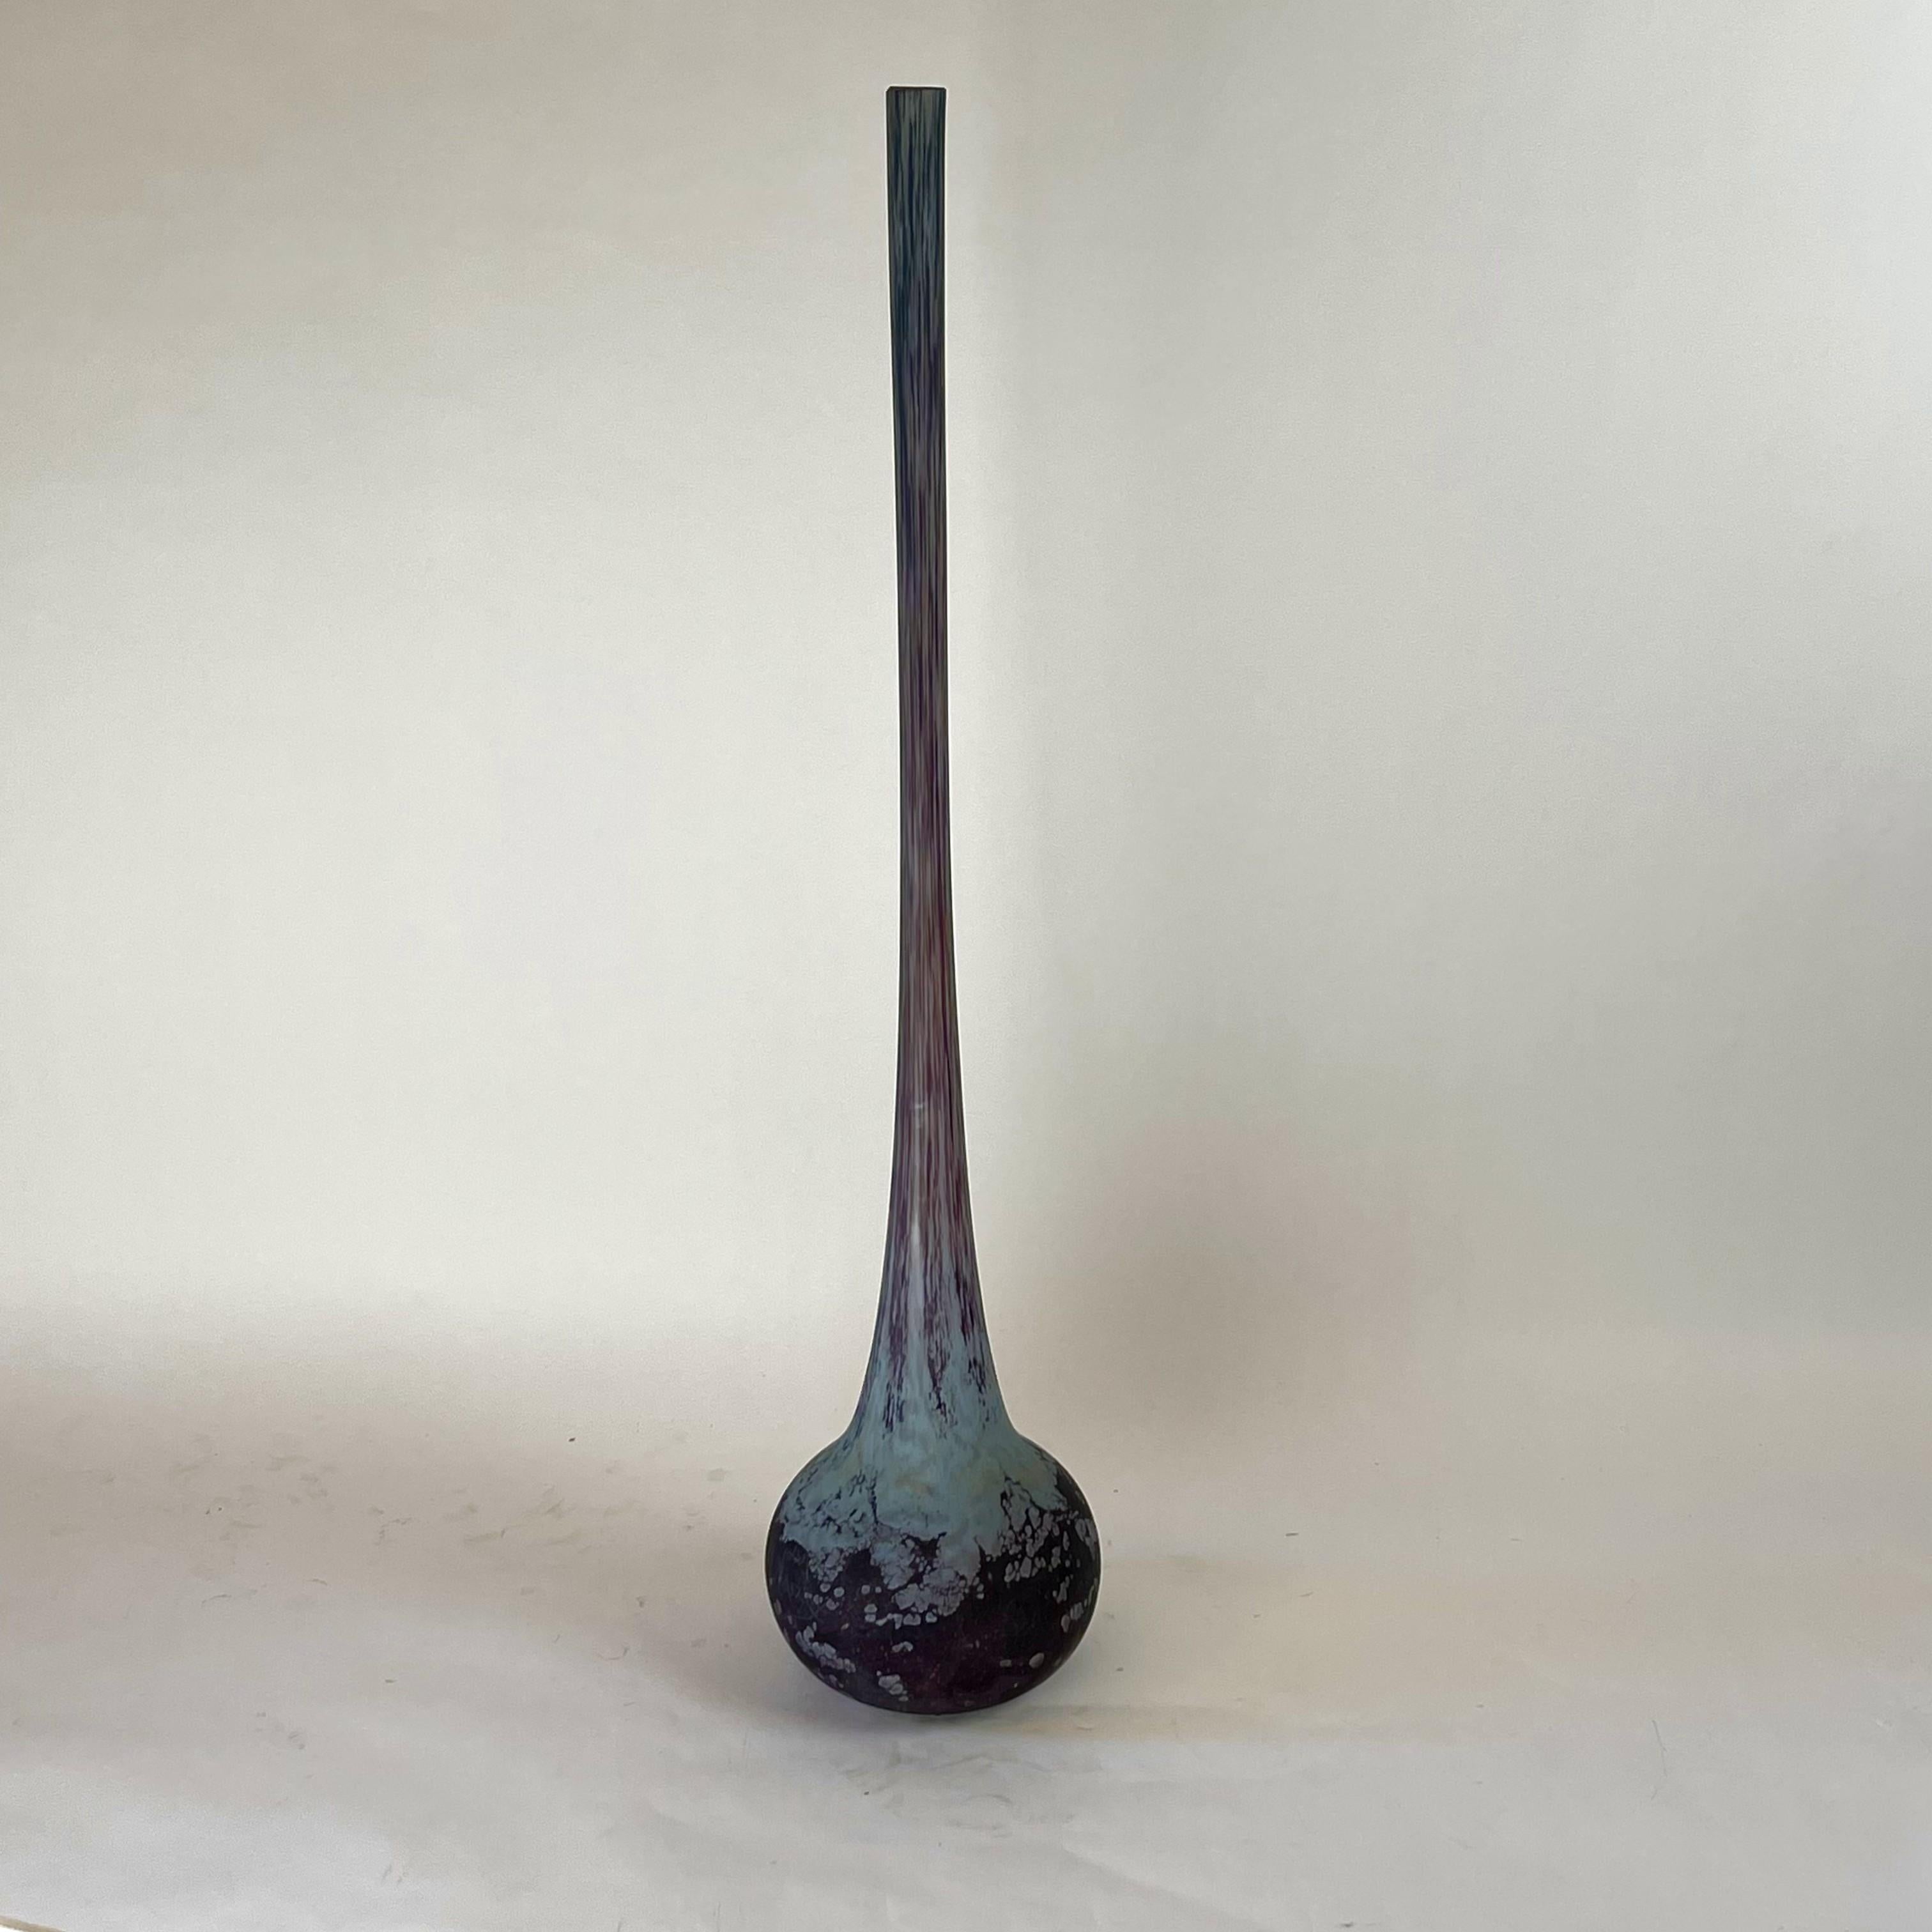 Colossal vase Art Déco en verre d'art soufflé à la bouche. Double pâte de verre Berluze.
La couleur violette est nuancée (avec des nuances). 
Vase signé avec gravure : Daum Nancy avec la Croix de Lorraine.